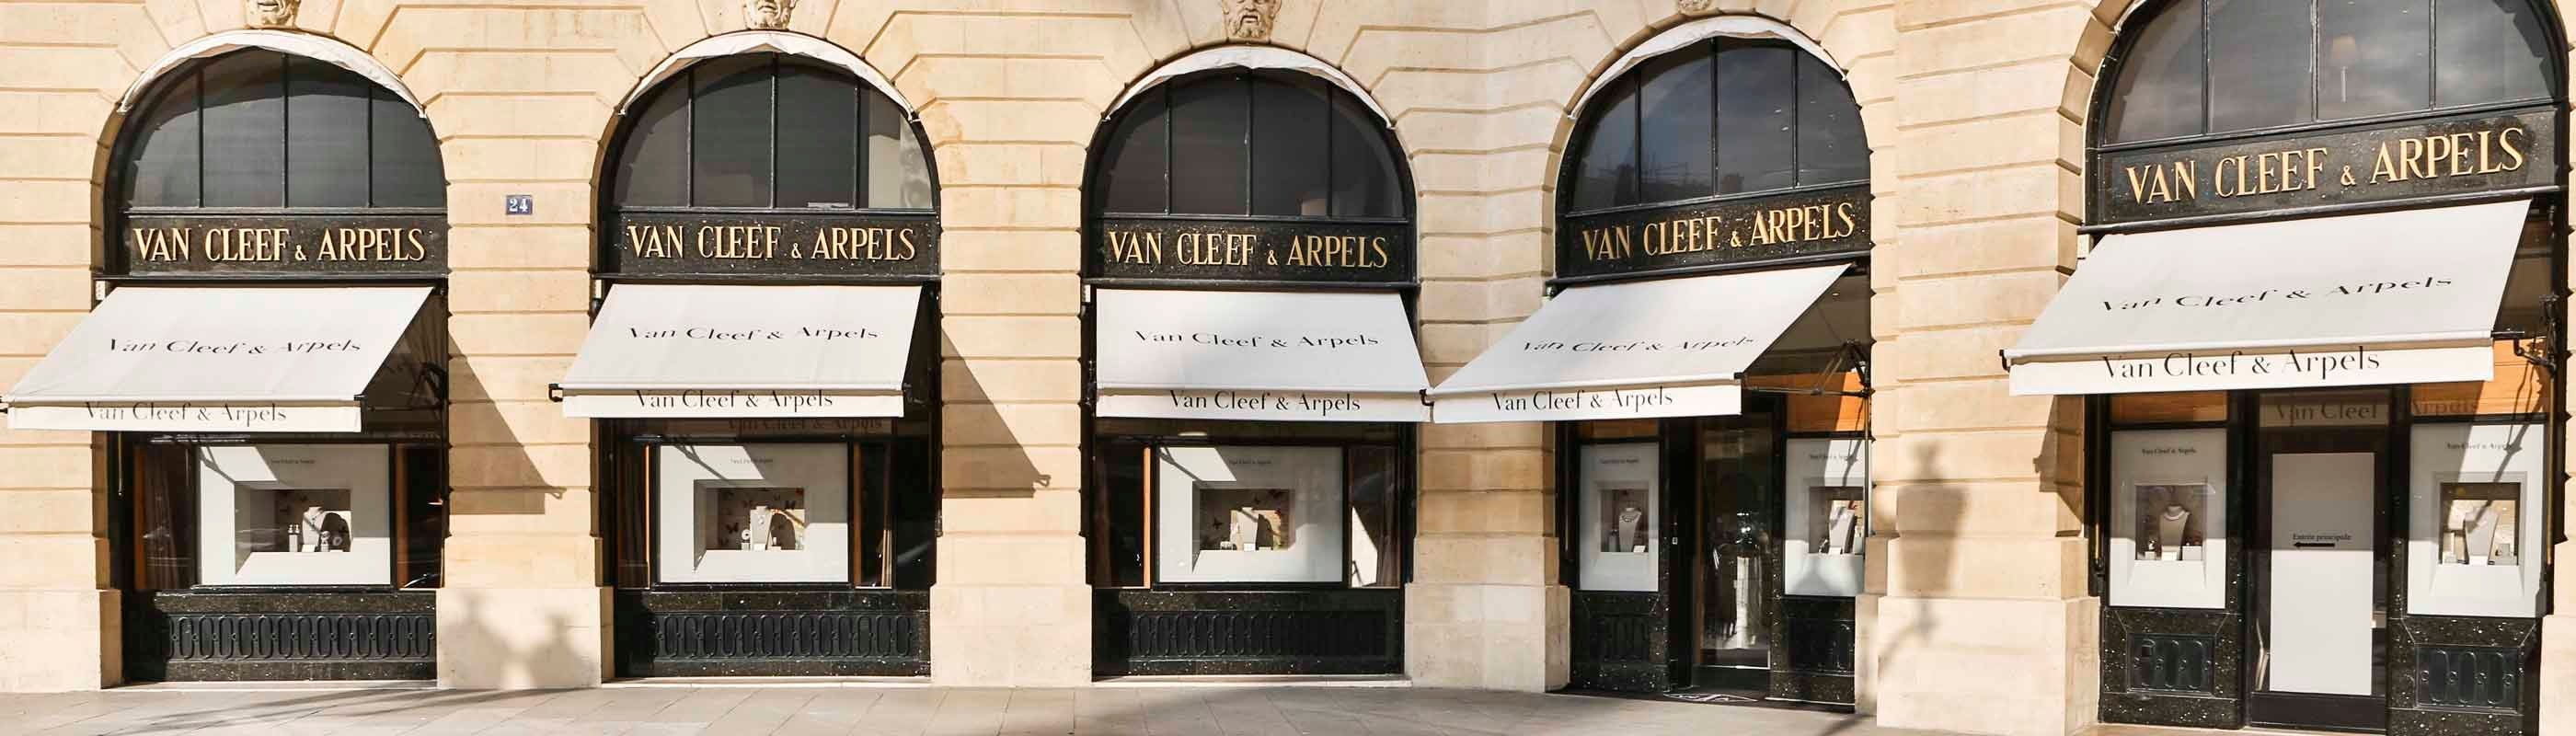 Van Cleef & Arpels shop in Miami